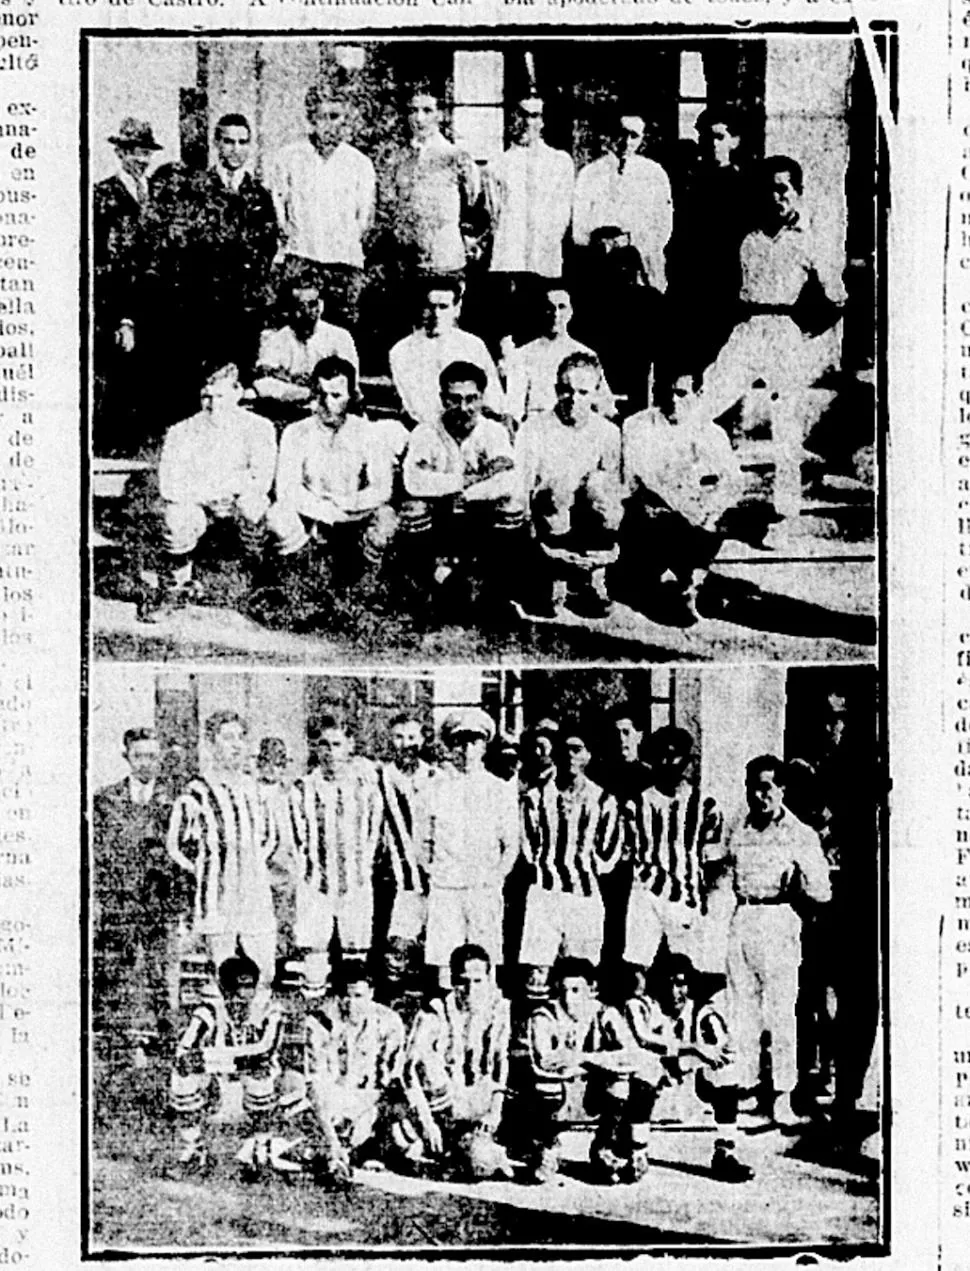 LOS EQUIPOS. El seleccionado nacional con sus mejores figuras (arriba) poco antes del encuentro y los “santos” a la espera del pitazo inicial en aquel 9 de Julio de 1925, 